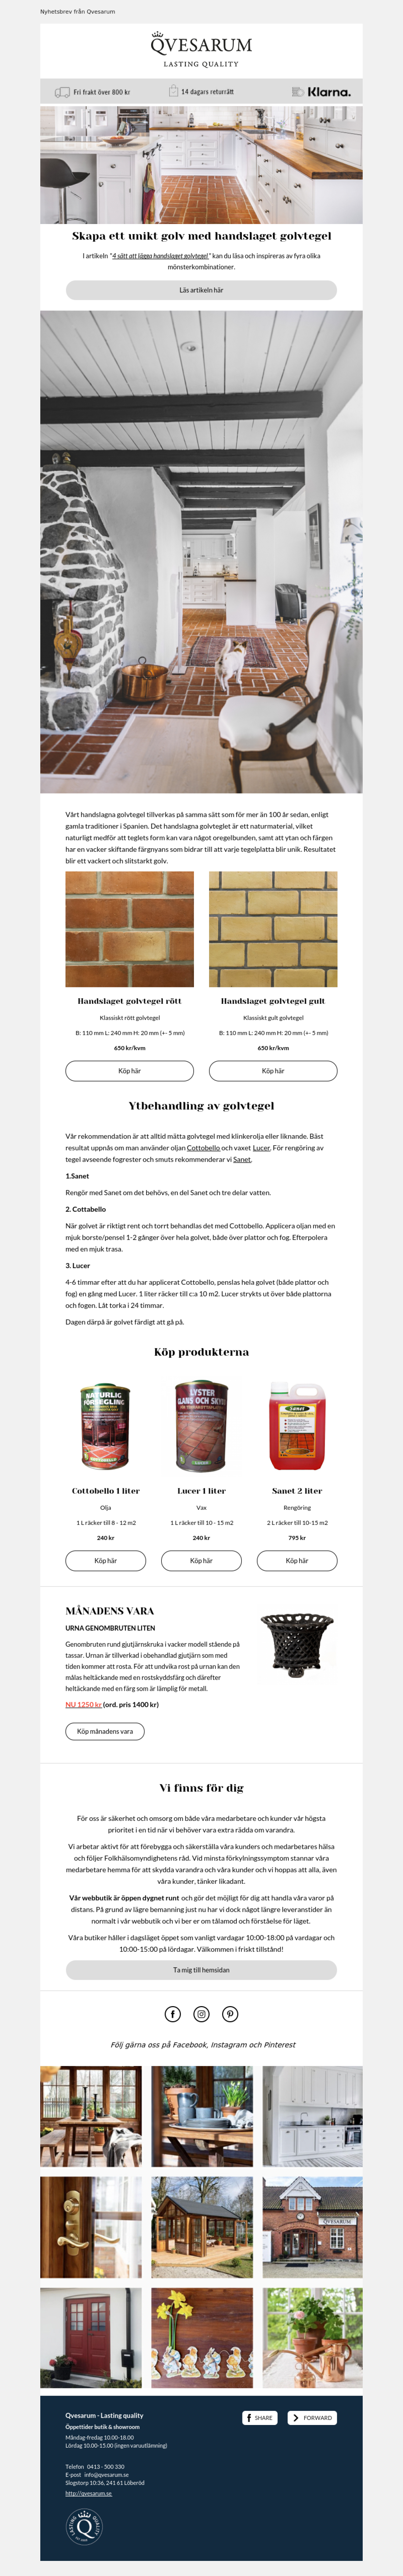 Qvesarum Lasting quality - e-commerce przykład - Stworzony przy użyciu MailerLite